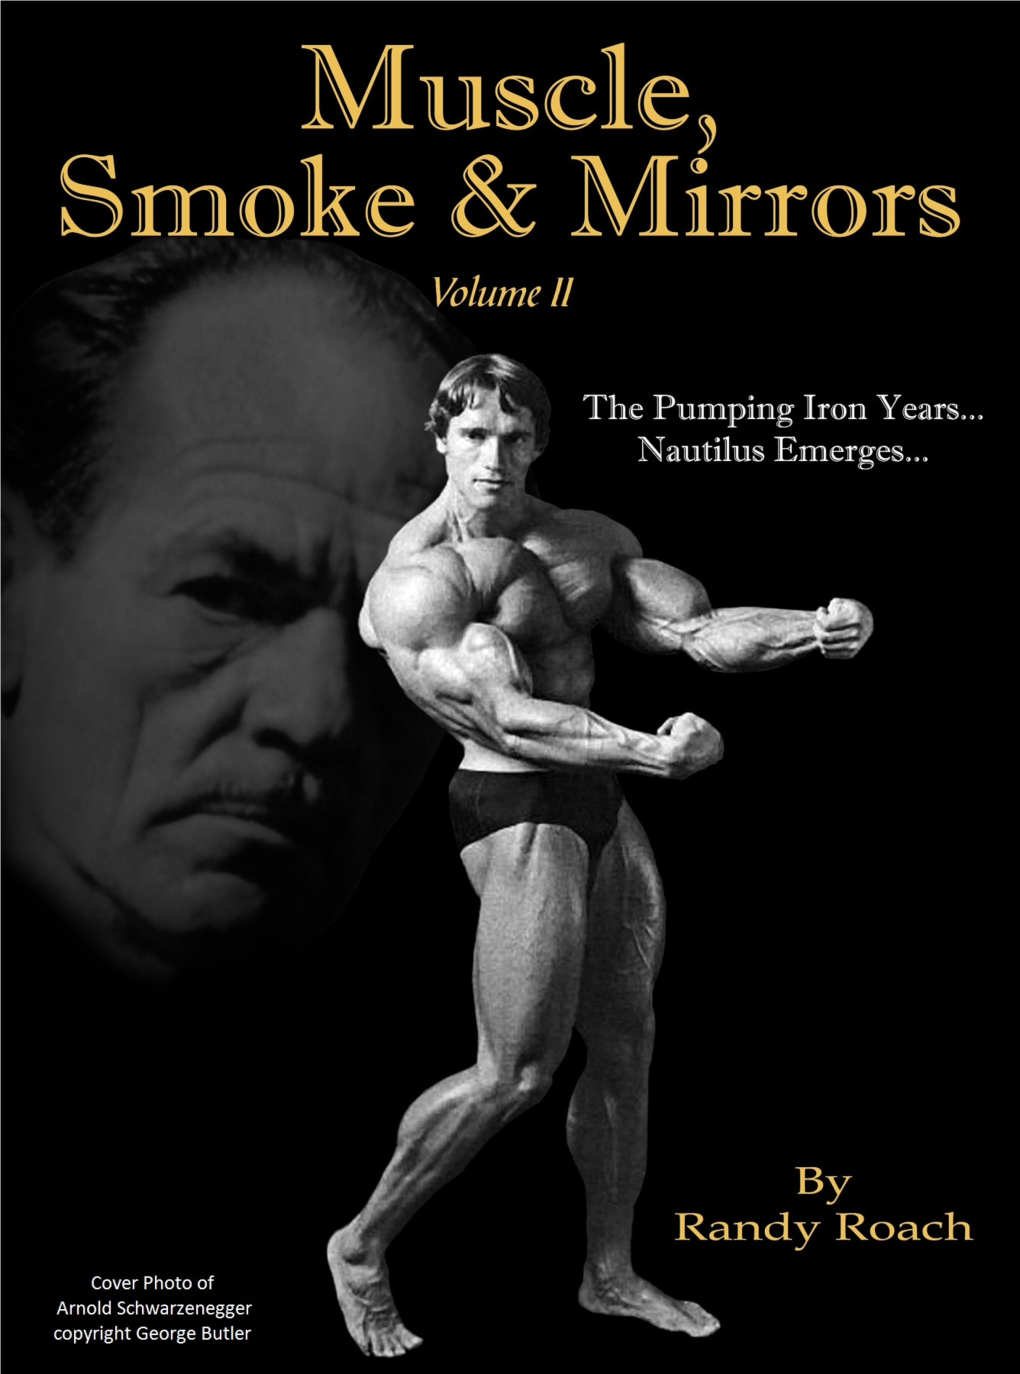 Muscle, Smoke & Mirrors Volume II Prologue